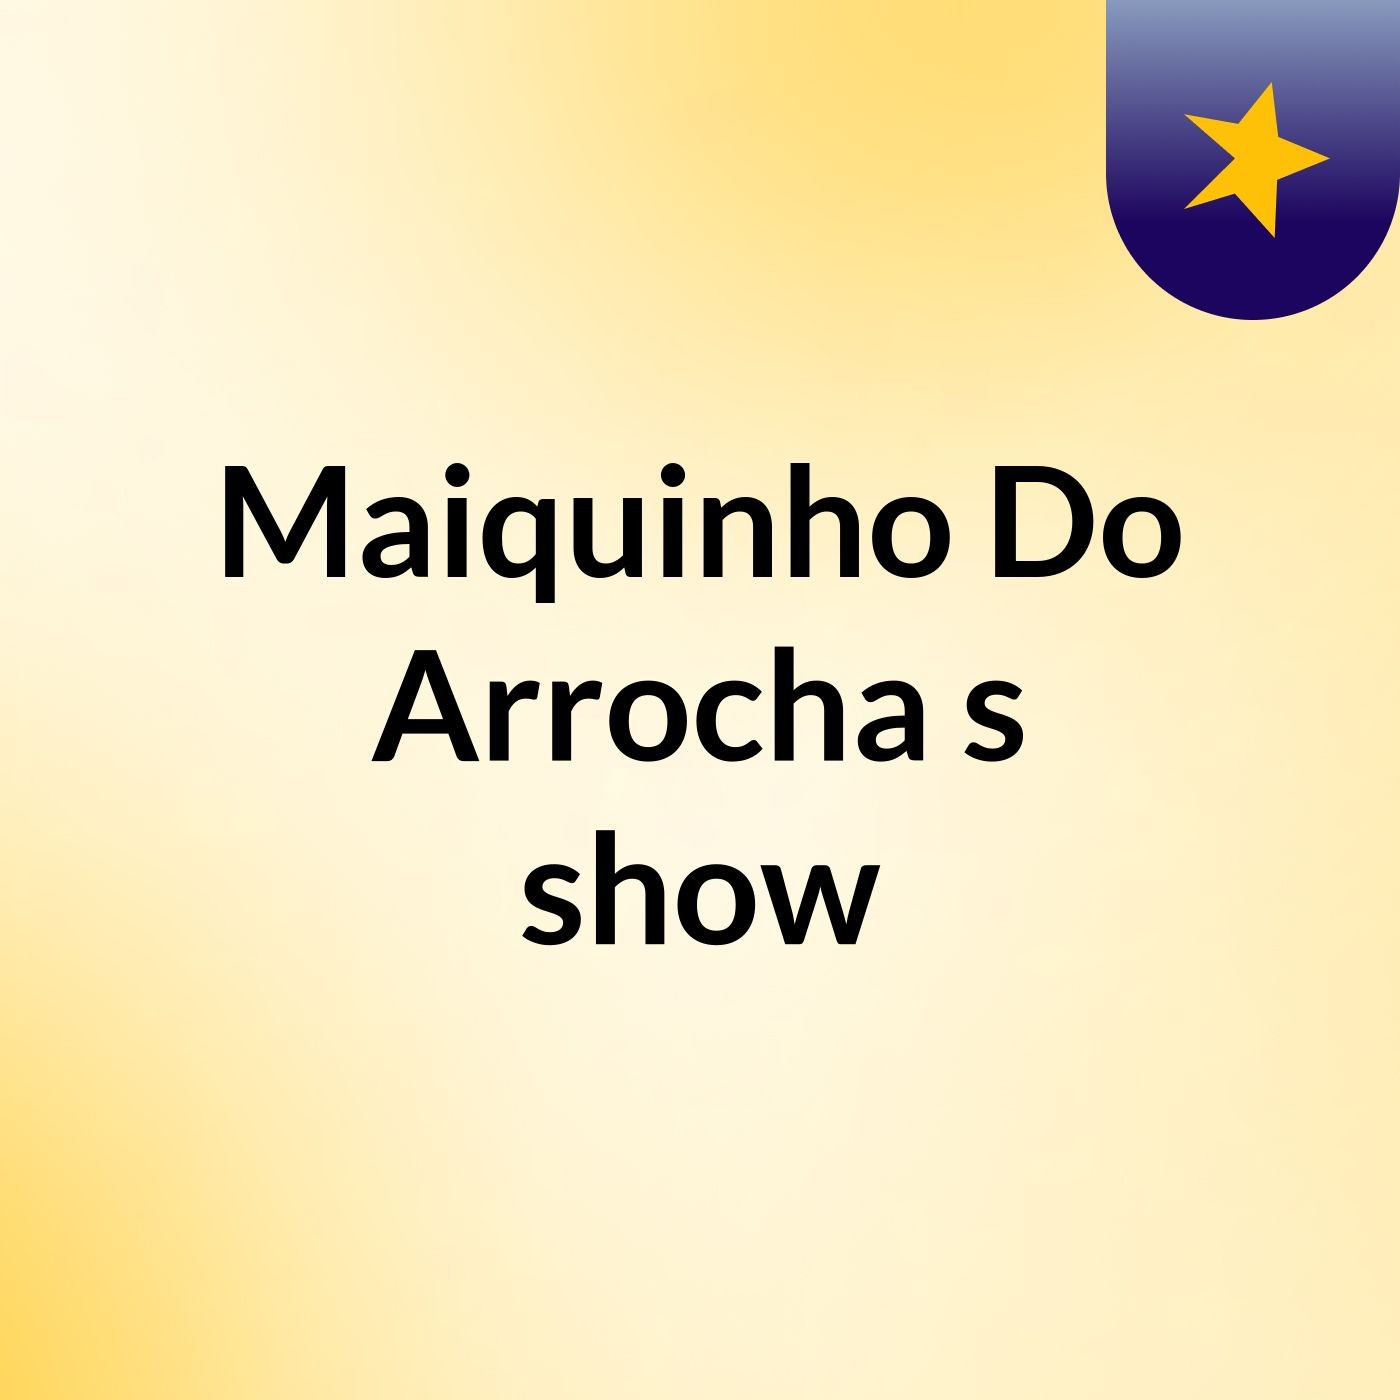 Maiquinho Do Arrocha's show